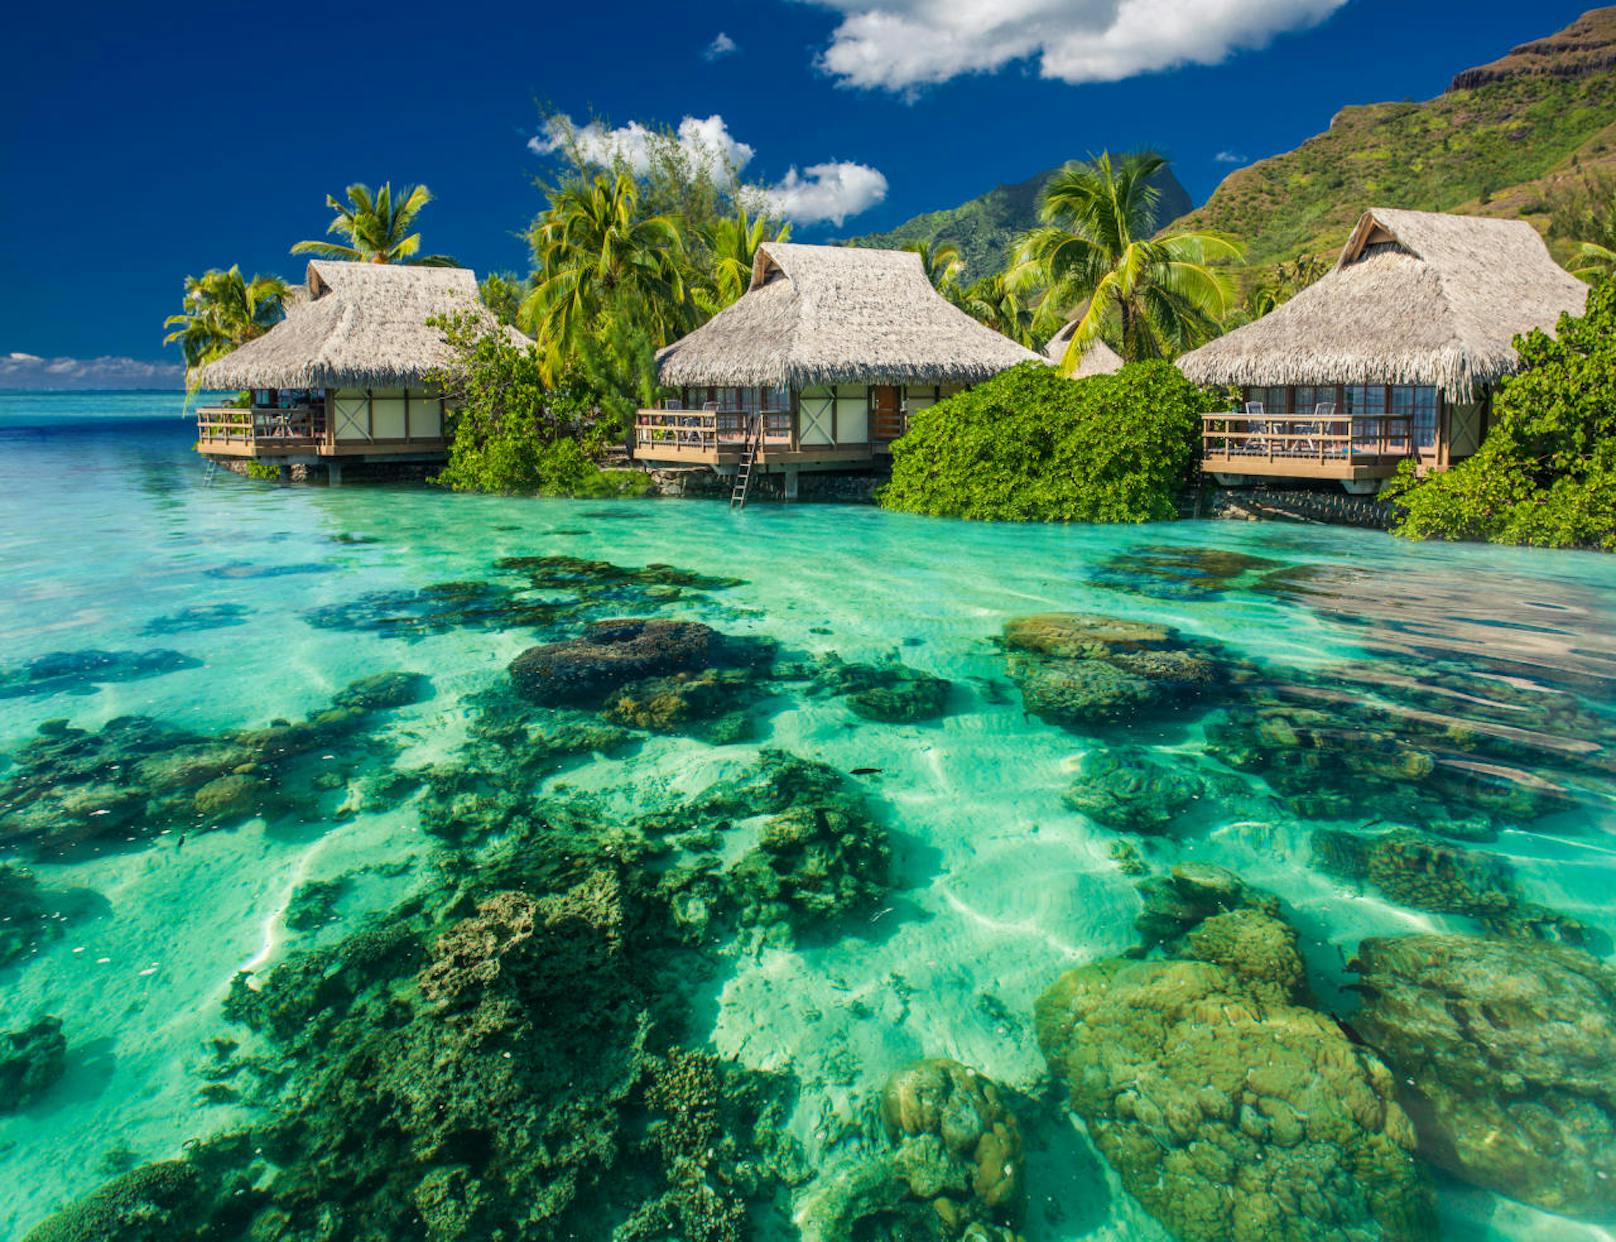 «Ich war noch nie auf Tahiti, und sehe es im Moment überall ... Jedes Mal, wenn ich die Sendung Below Deck schaue, denke ich: Wir müssen unbedingt nach Tahiti! Es sieht so toll aus und ist definitiv auf meiner Bucket List.»